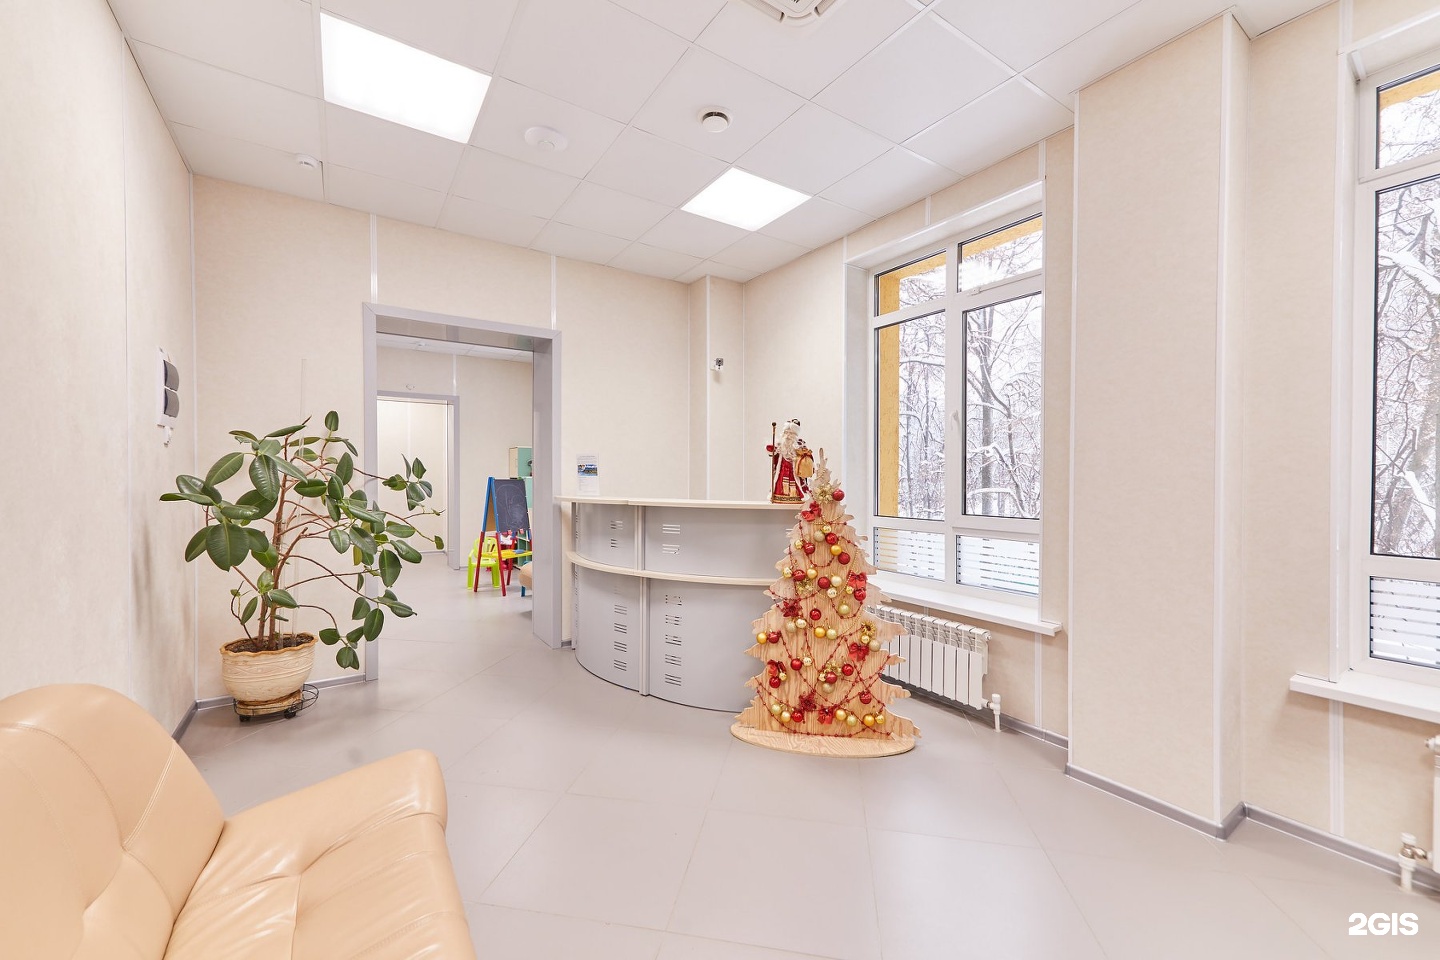 Первый медицинский центр. Первый медицинский центр Брянск. Первый медицинский центр в Брянске на Рославльской. Транспортный переулок 1 медицинский центр.